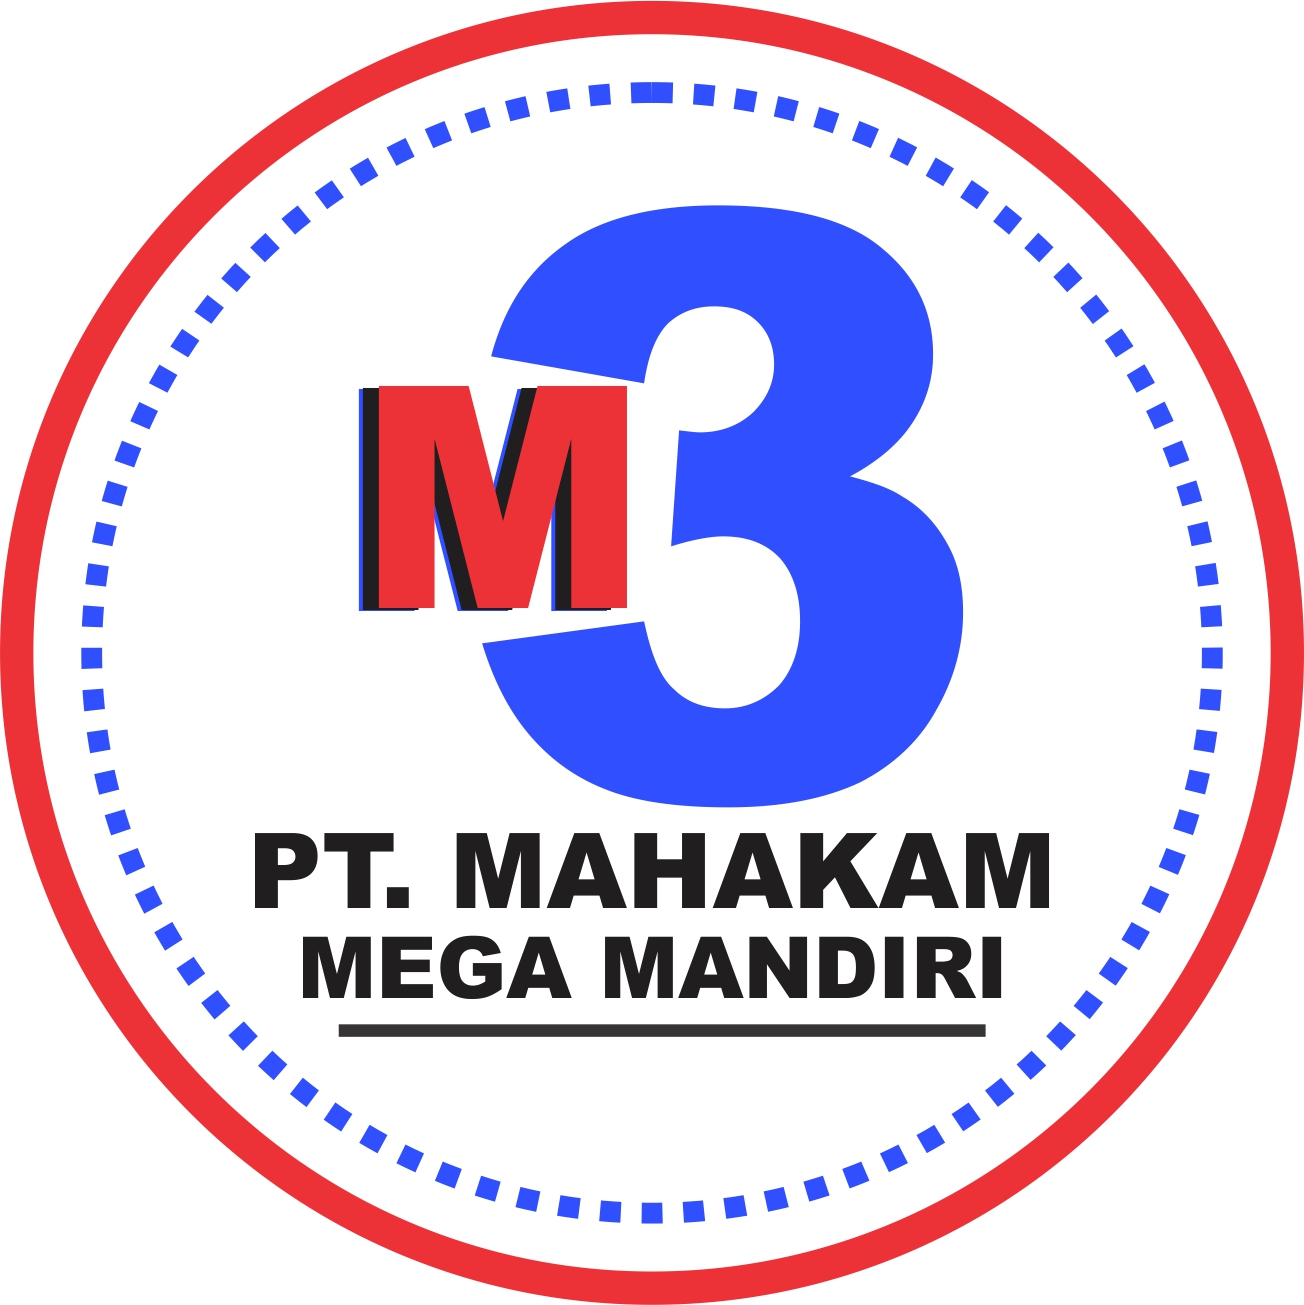 Karir di ADMINISTRASI KEUANGAN di PT.mahakam Mega Mandiri, Sungai Keledang, Samarinda Seberang, Kota Samarinda, Kalimantan Timur, Indonesia